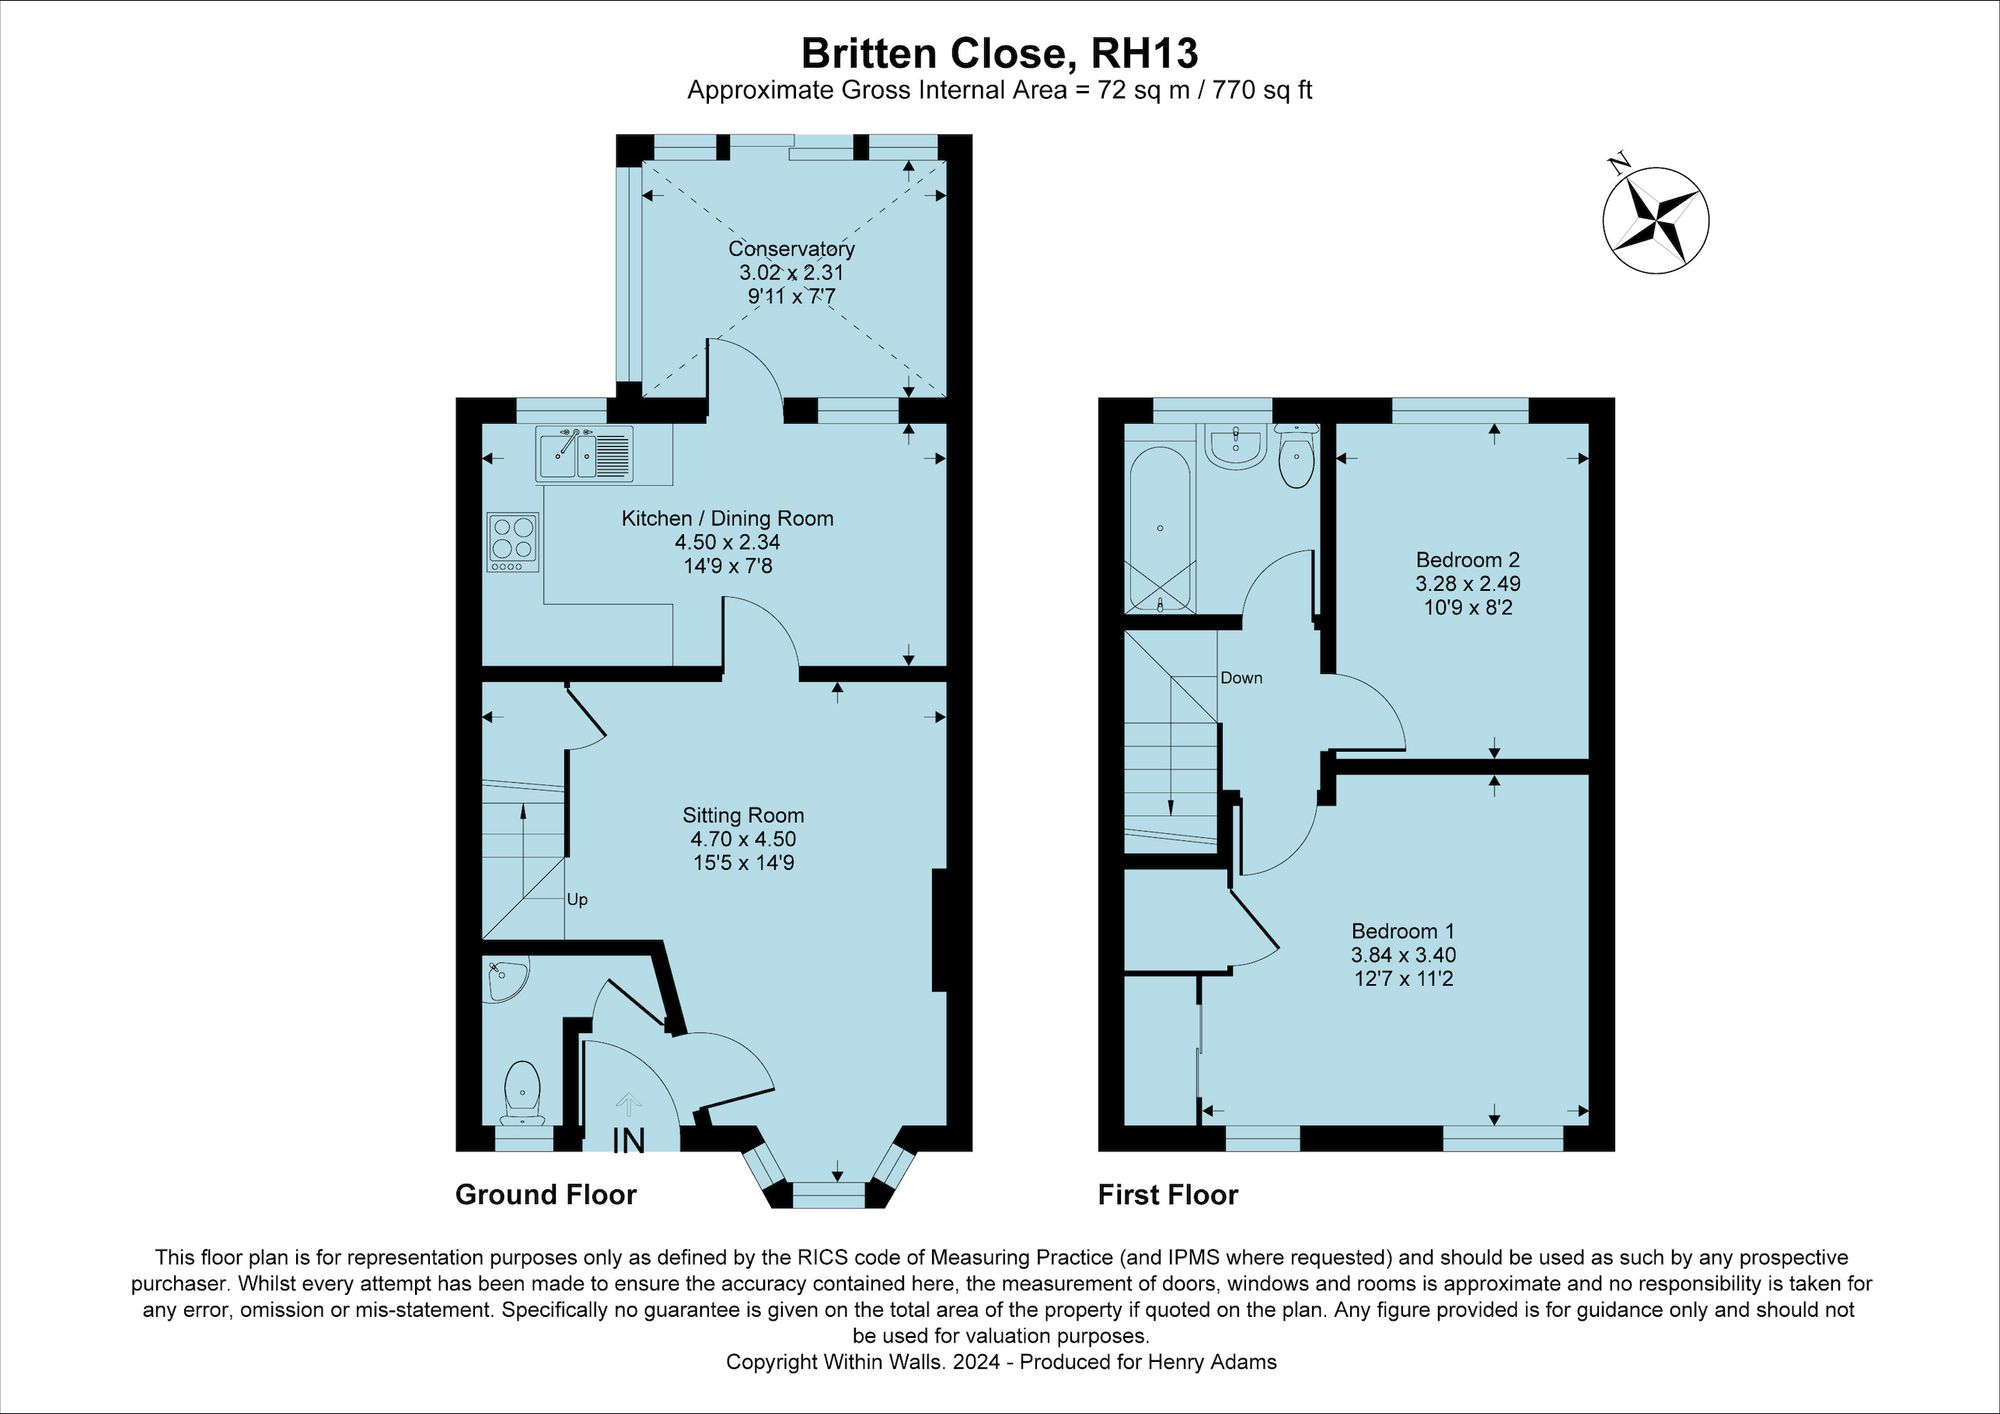 Britten Close, Horsham, RH13 floorplans